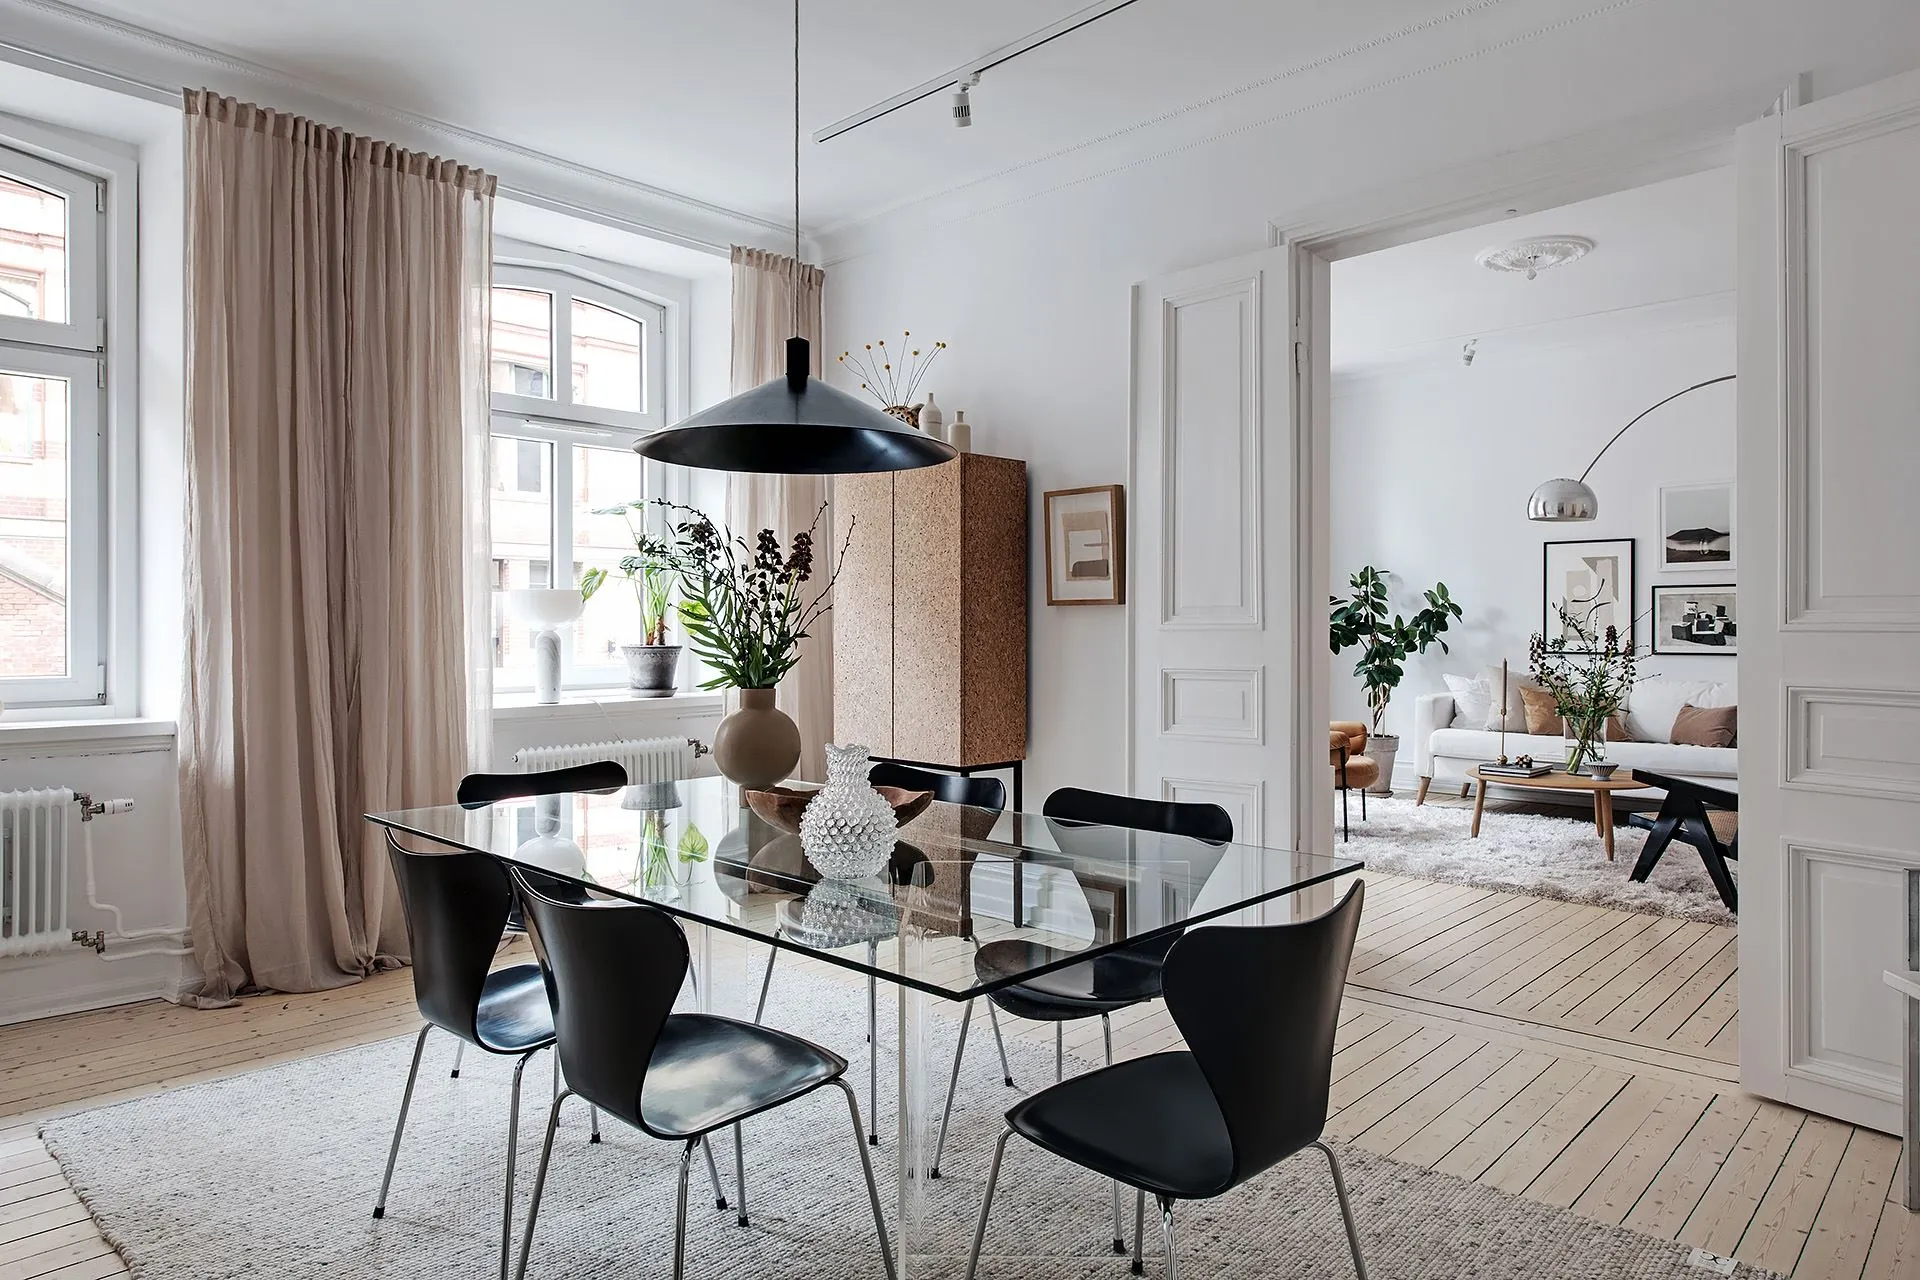 visite déco appartement scandinave contraste salle à manger ouverte sur salon